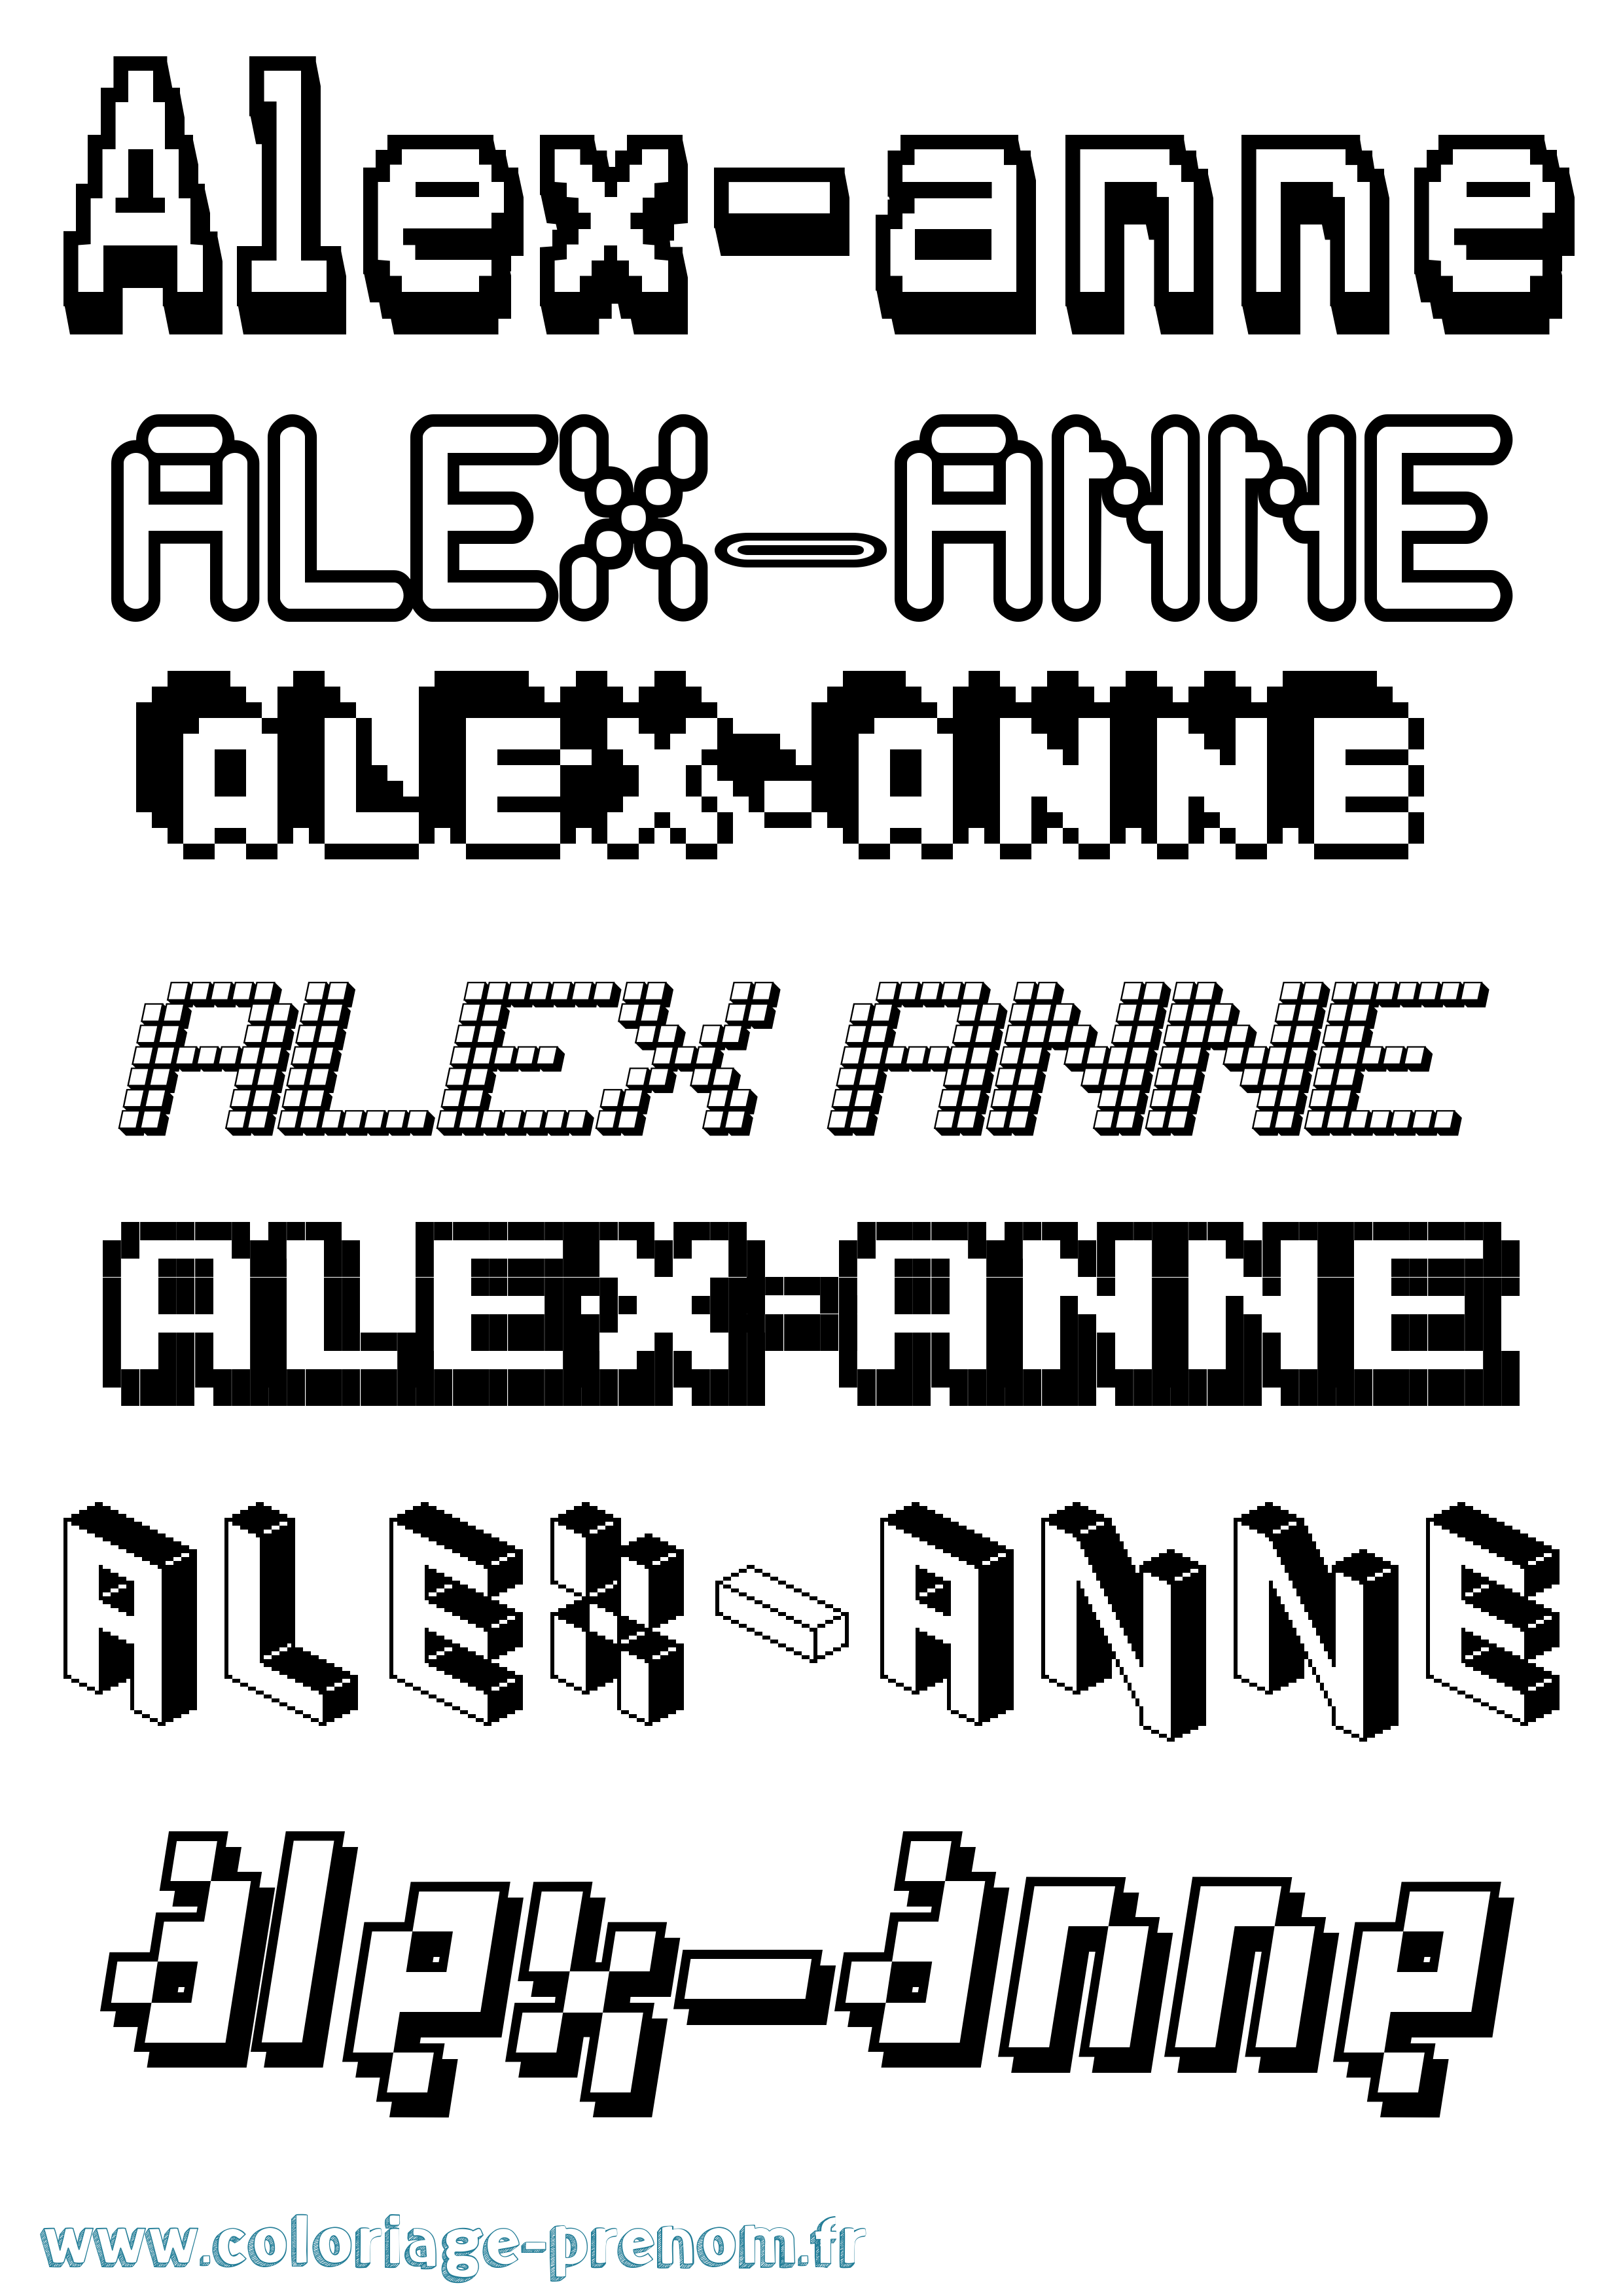 Coloriage prénom Alex-Anne Pixel